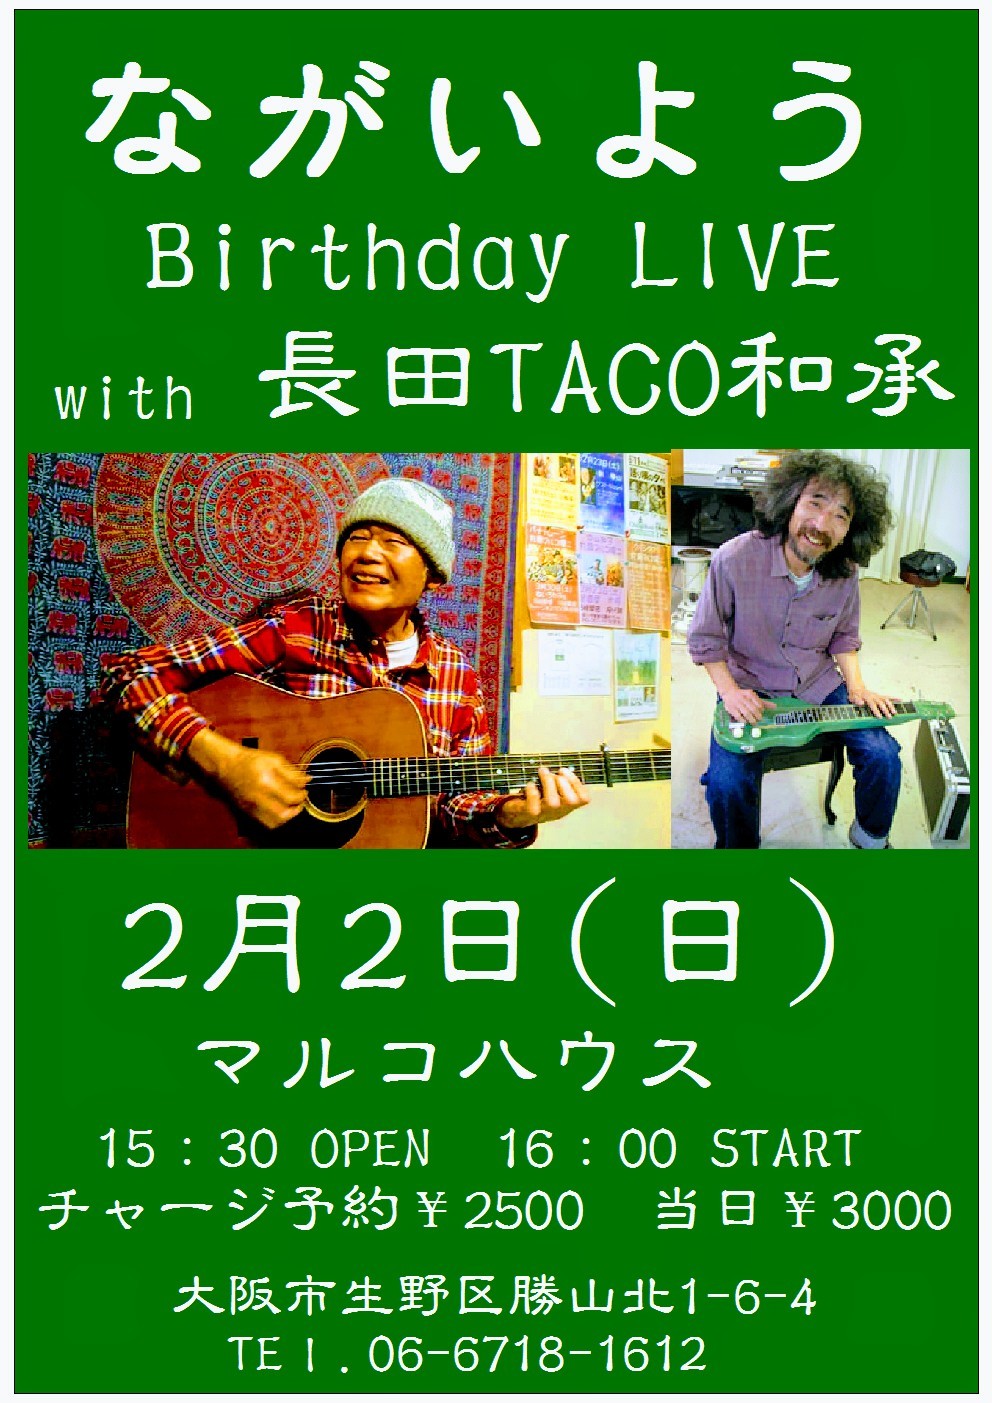 2月2日(日) ながいよう Birthday LIVE with 長田TACO和承_c0162137_20492076.jpg